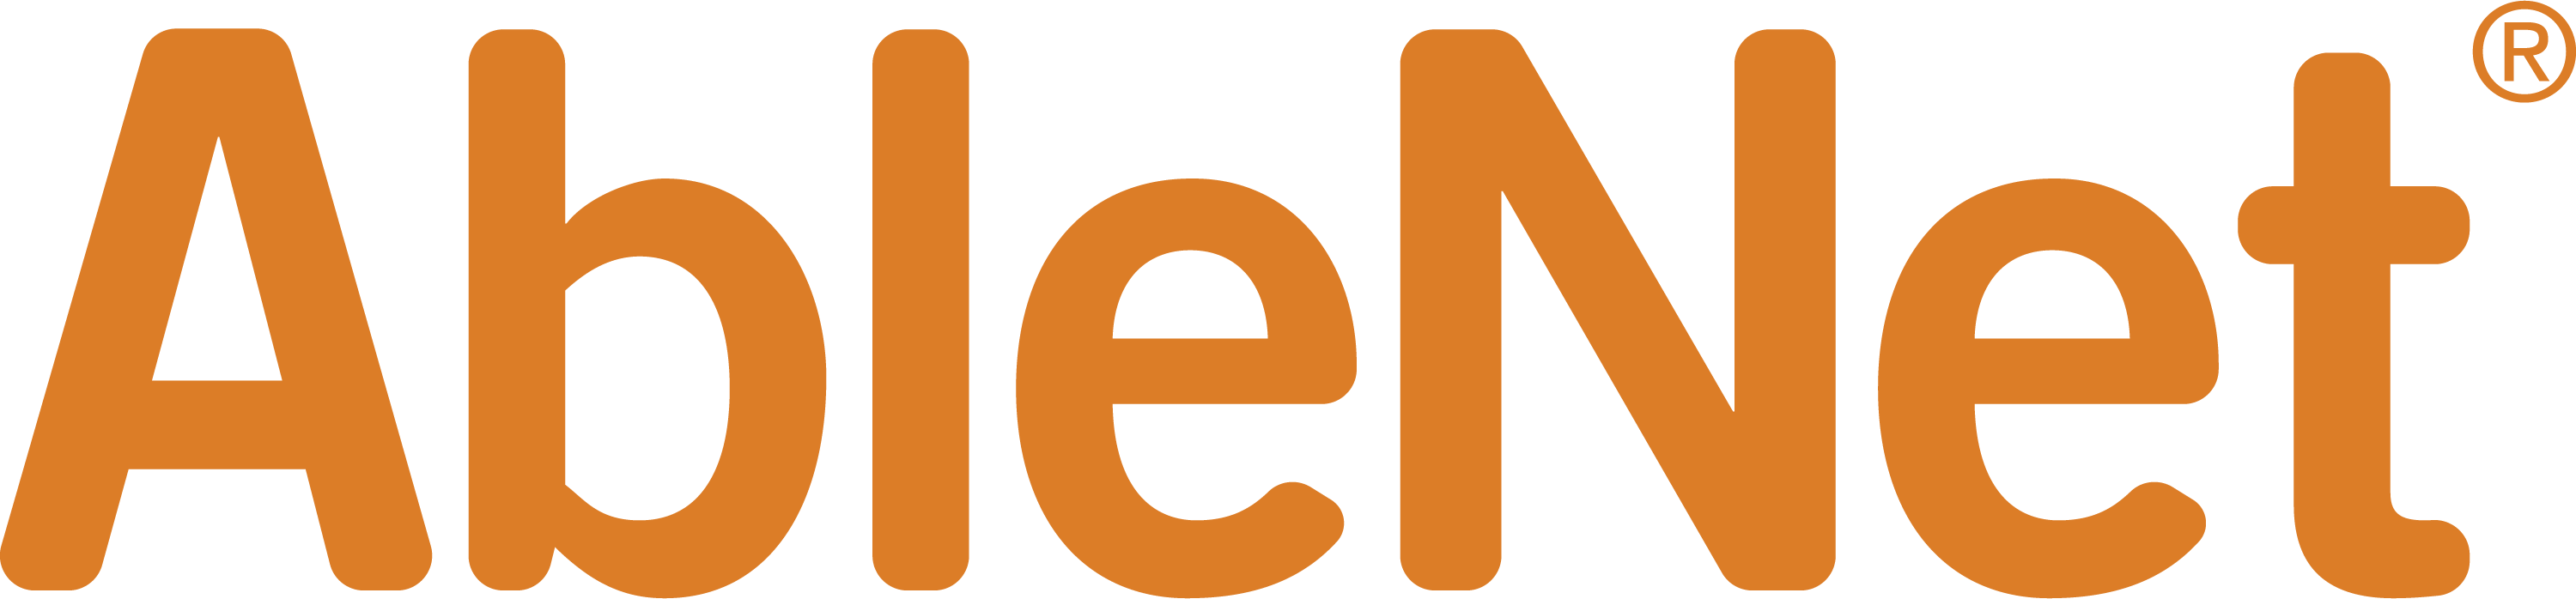 AbleNet Logo 2019 Version  - Web - Orange.png